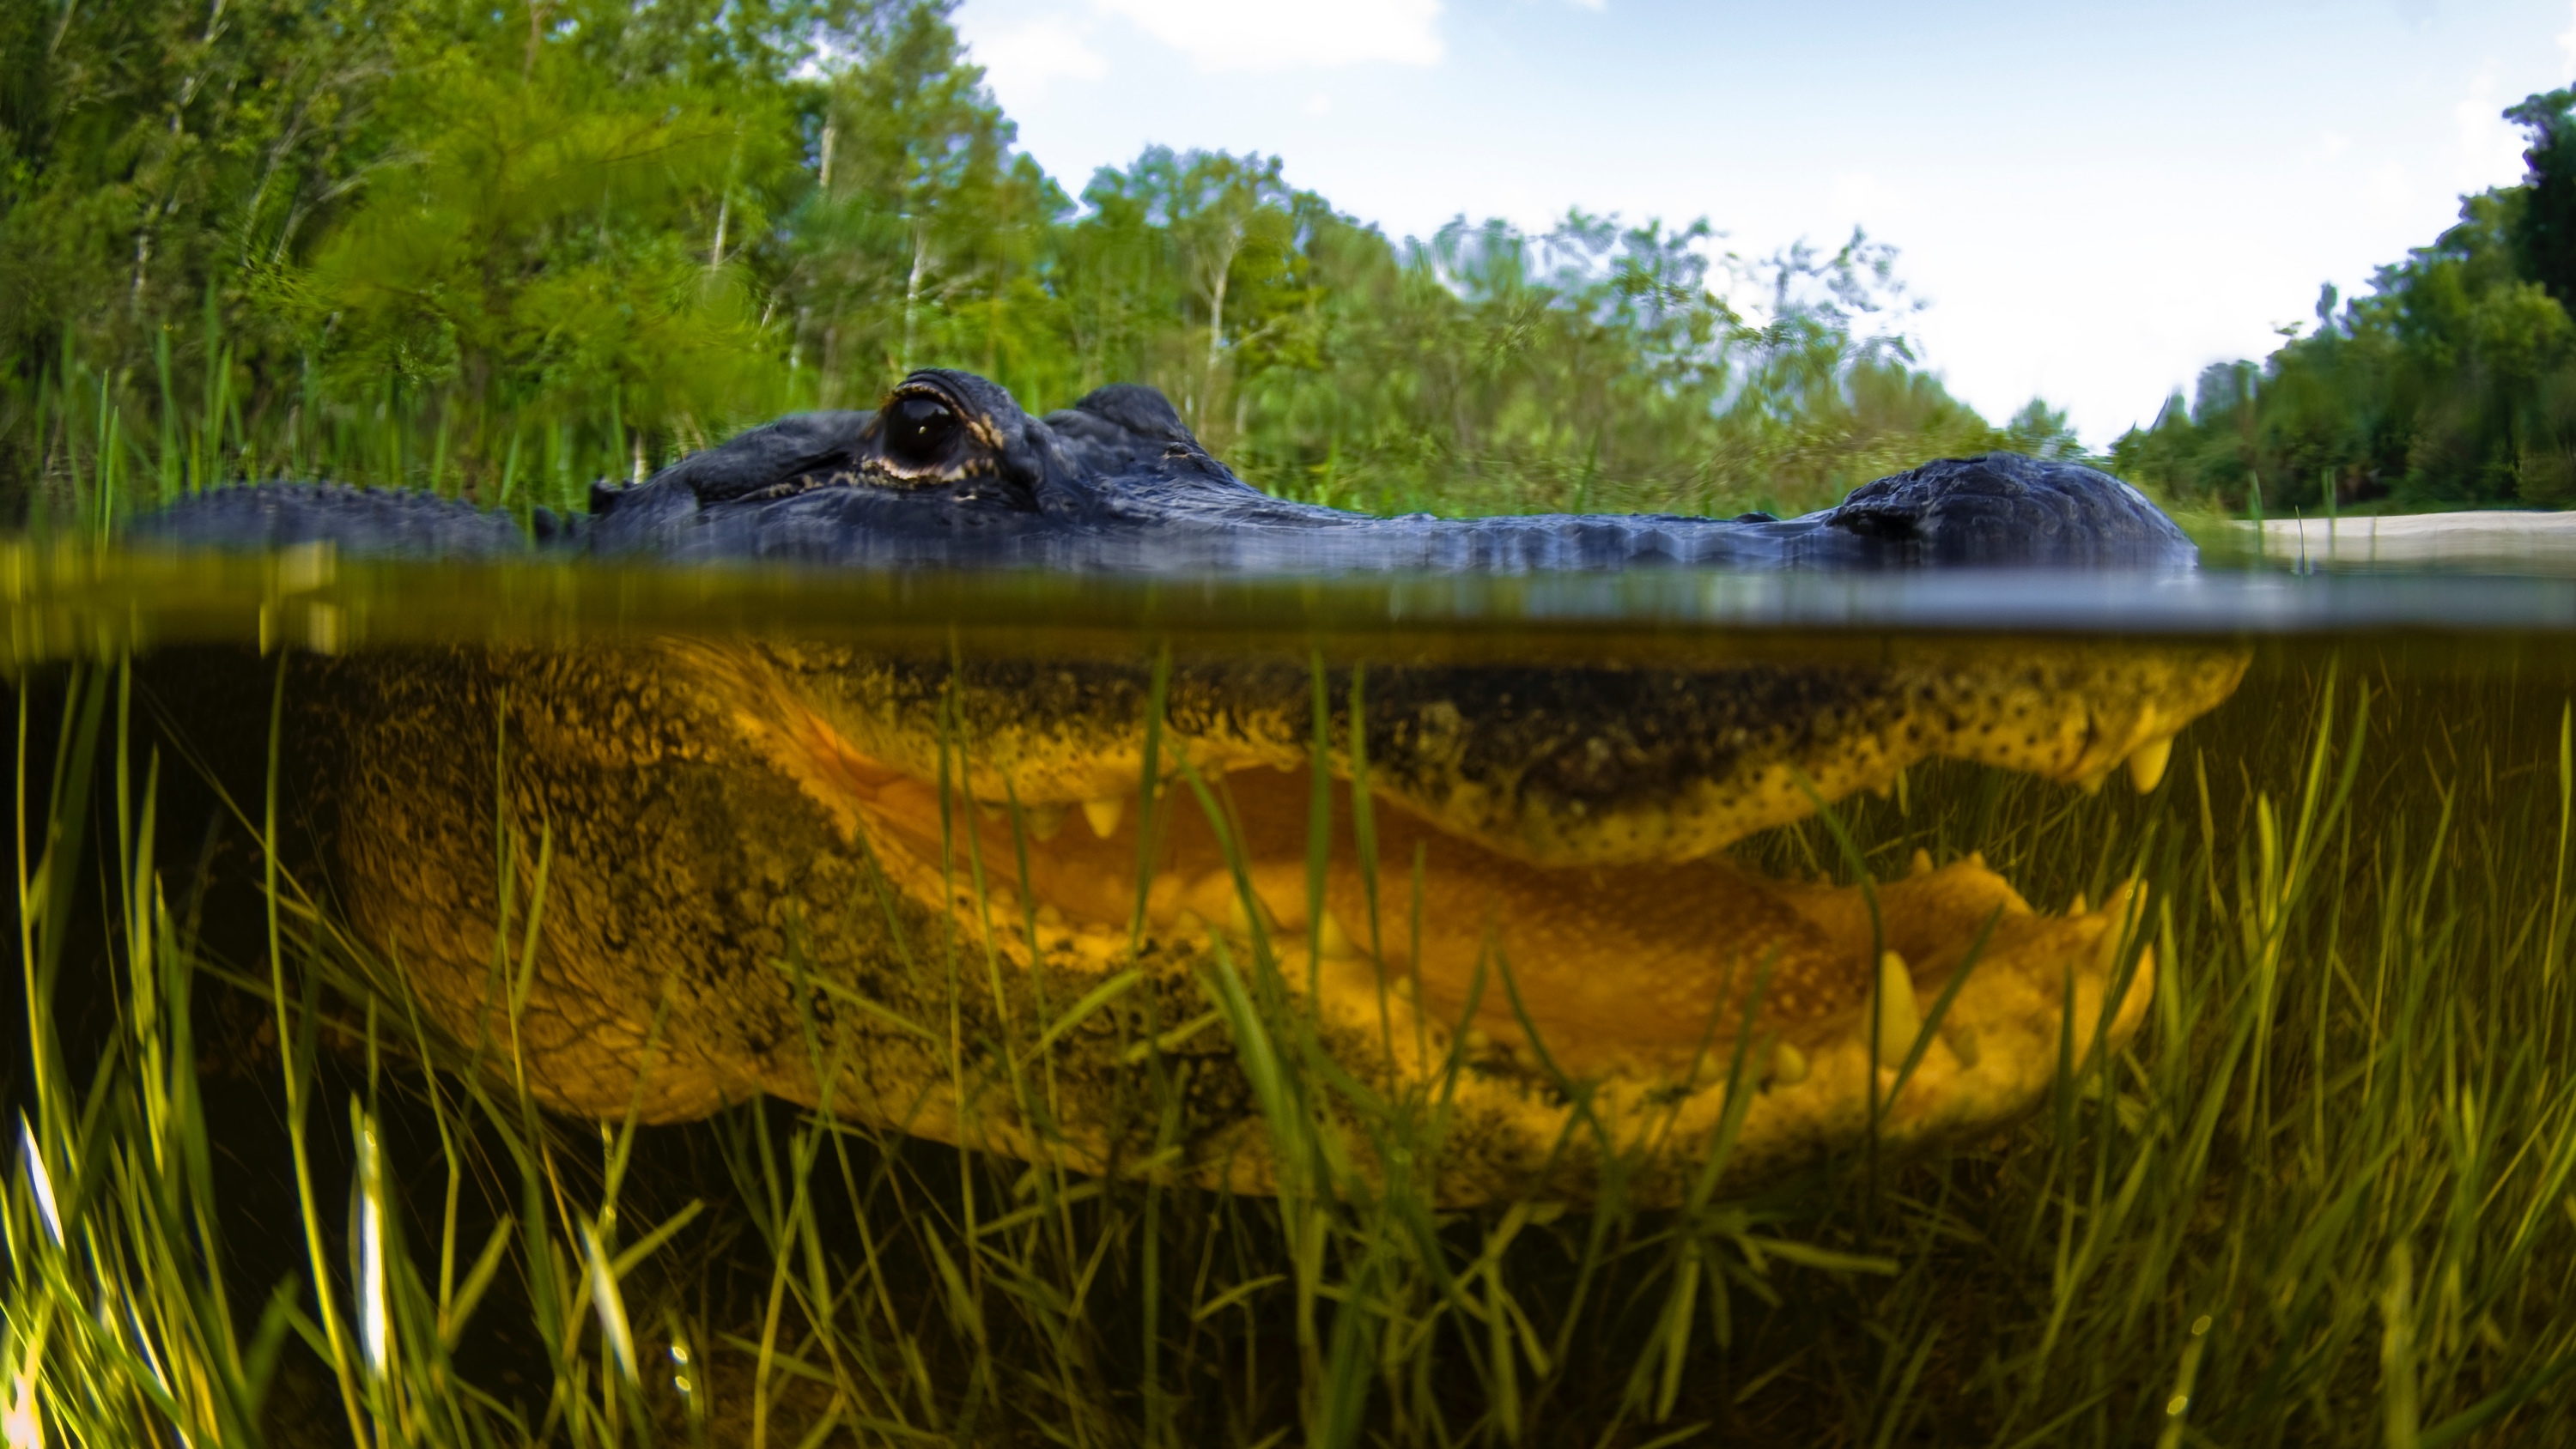 Florida alligator in The Everglades